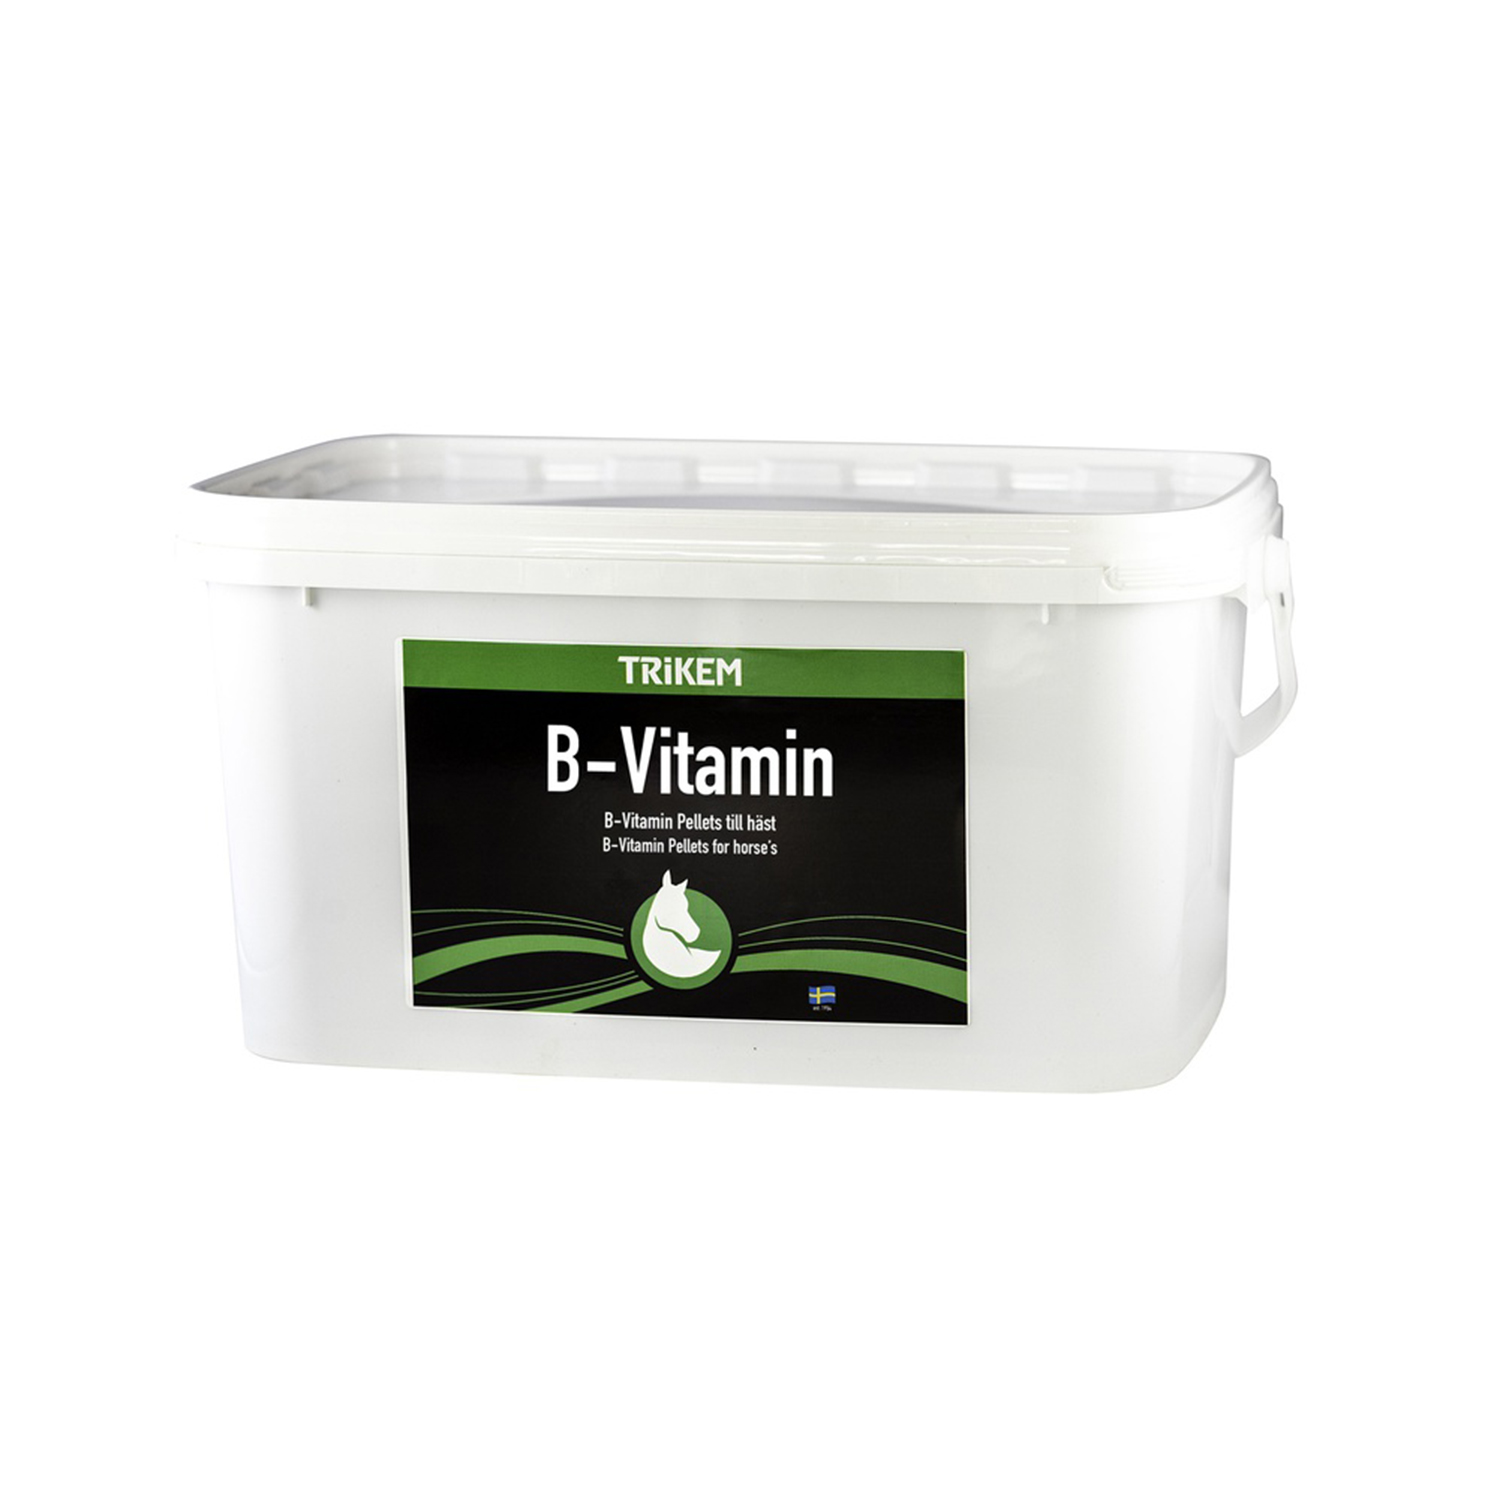 Vimital b-vitamin pellets 3,5 kg